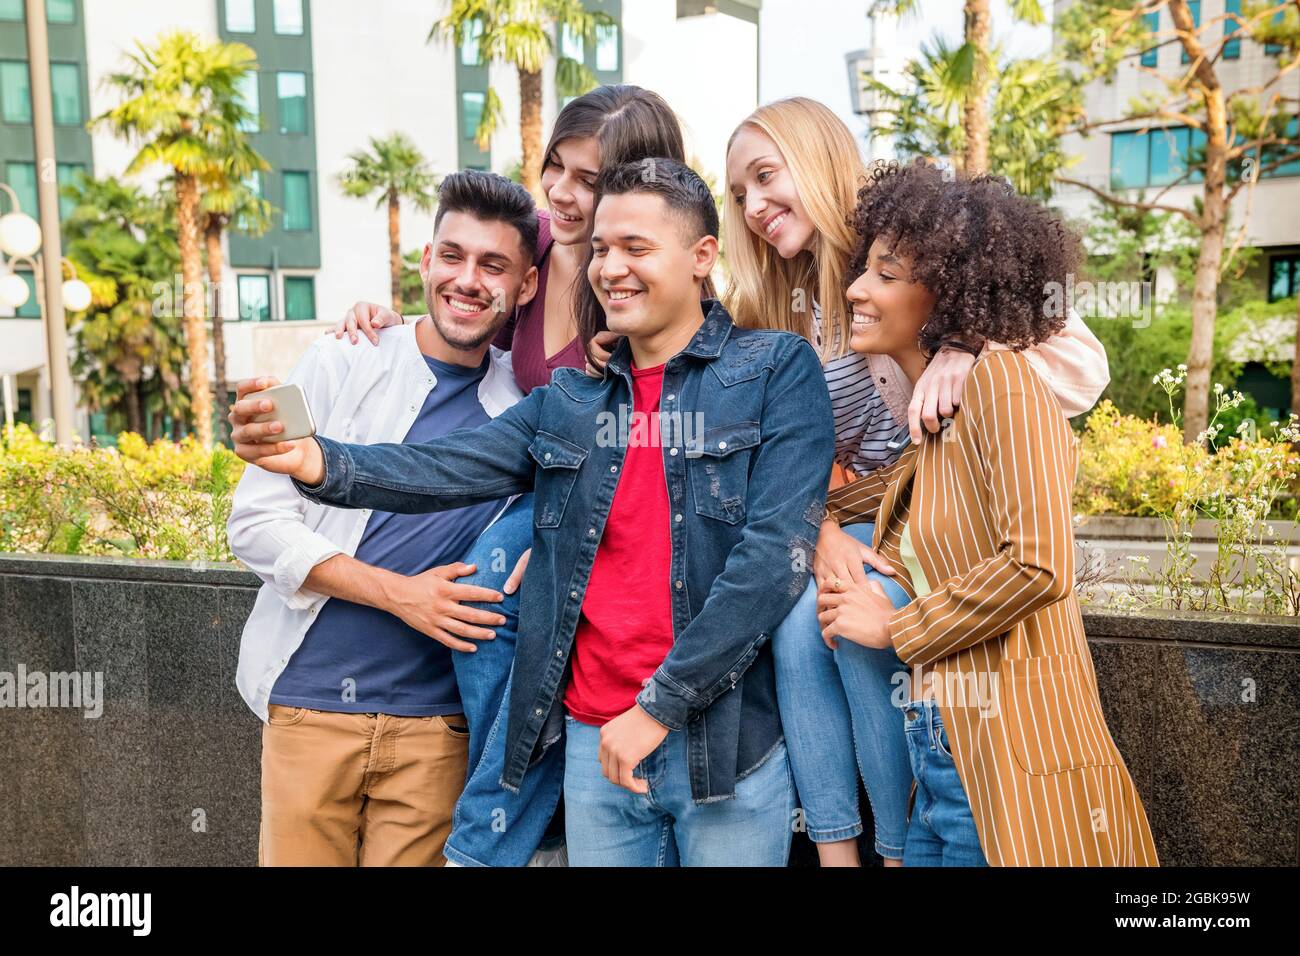 Eine Gruppe von fünf glücklichen multikulturellen Freunden, die ein Selfie auf einem Mobiltelefon auf einer Stadtstraße machen, lachen und lächeln, während sie für die Kamera posieren Stockfoto